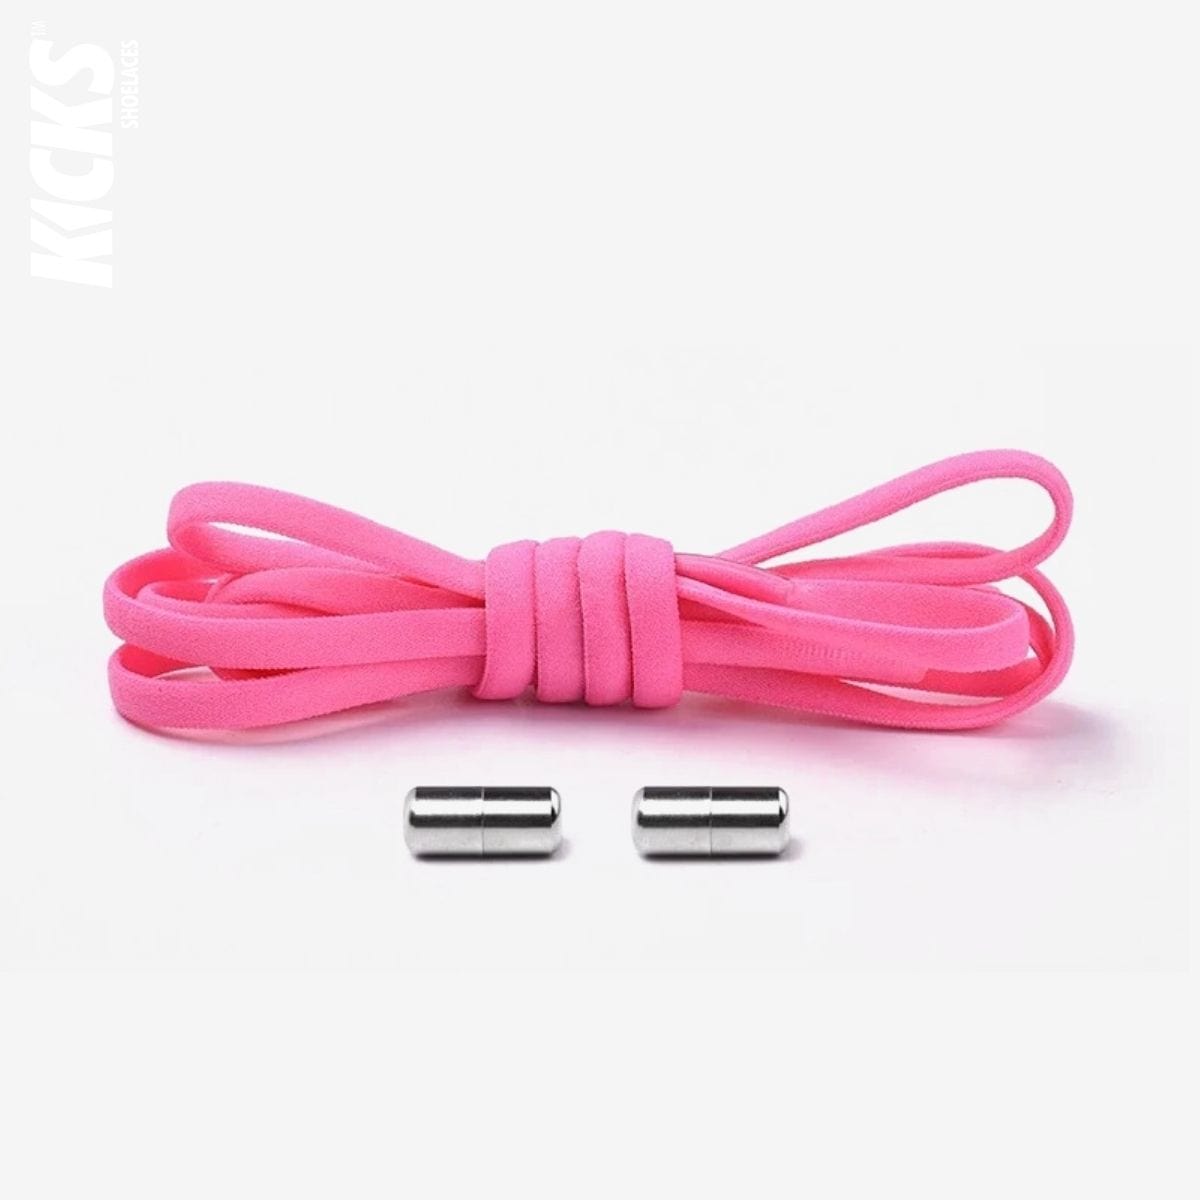 Round No-Tie Shoelaces | Hot Pink Laces – Kicks Shoelaces